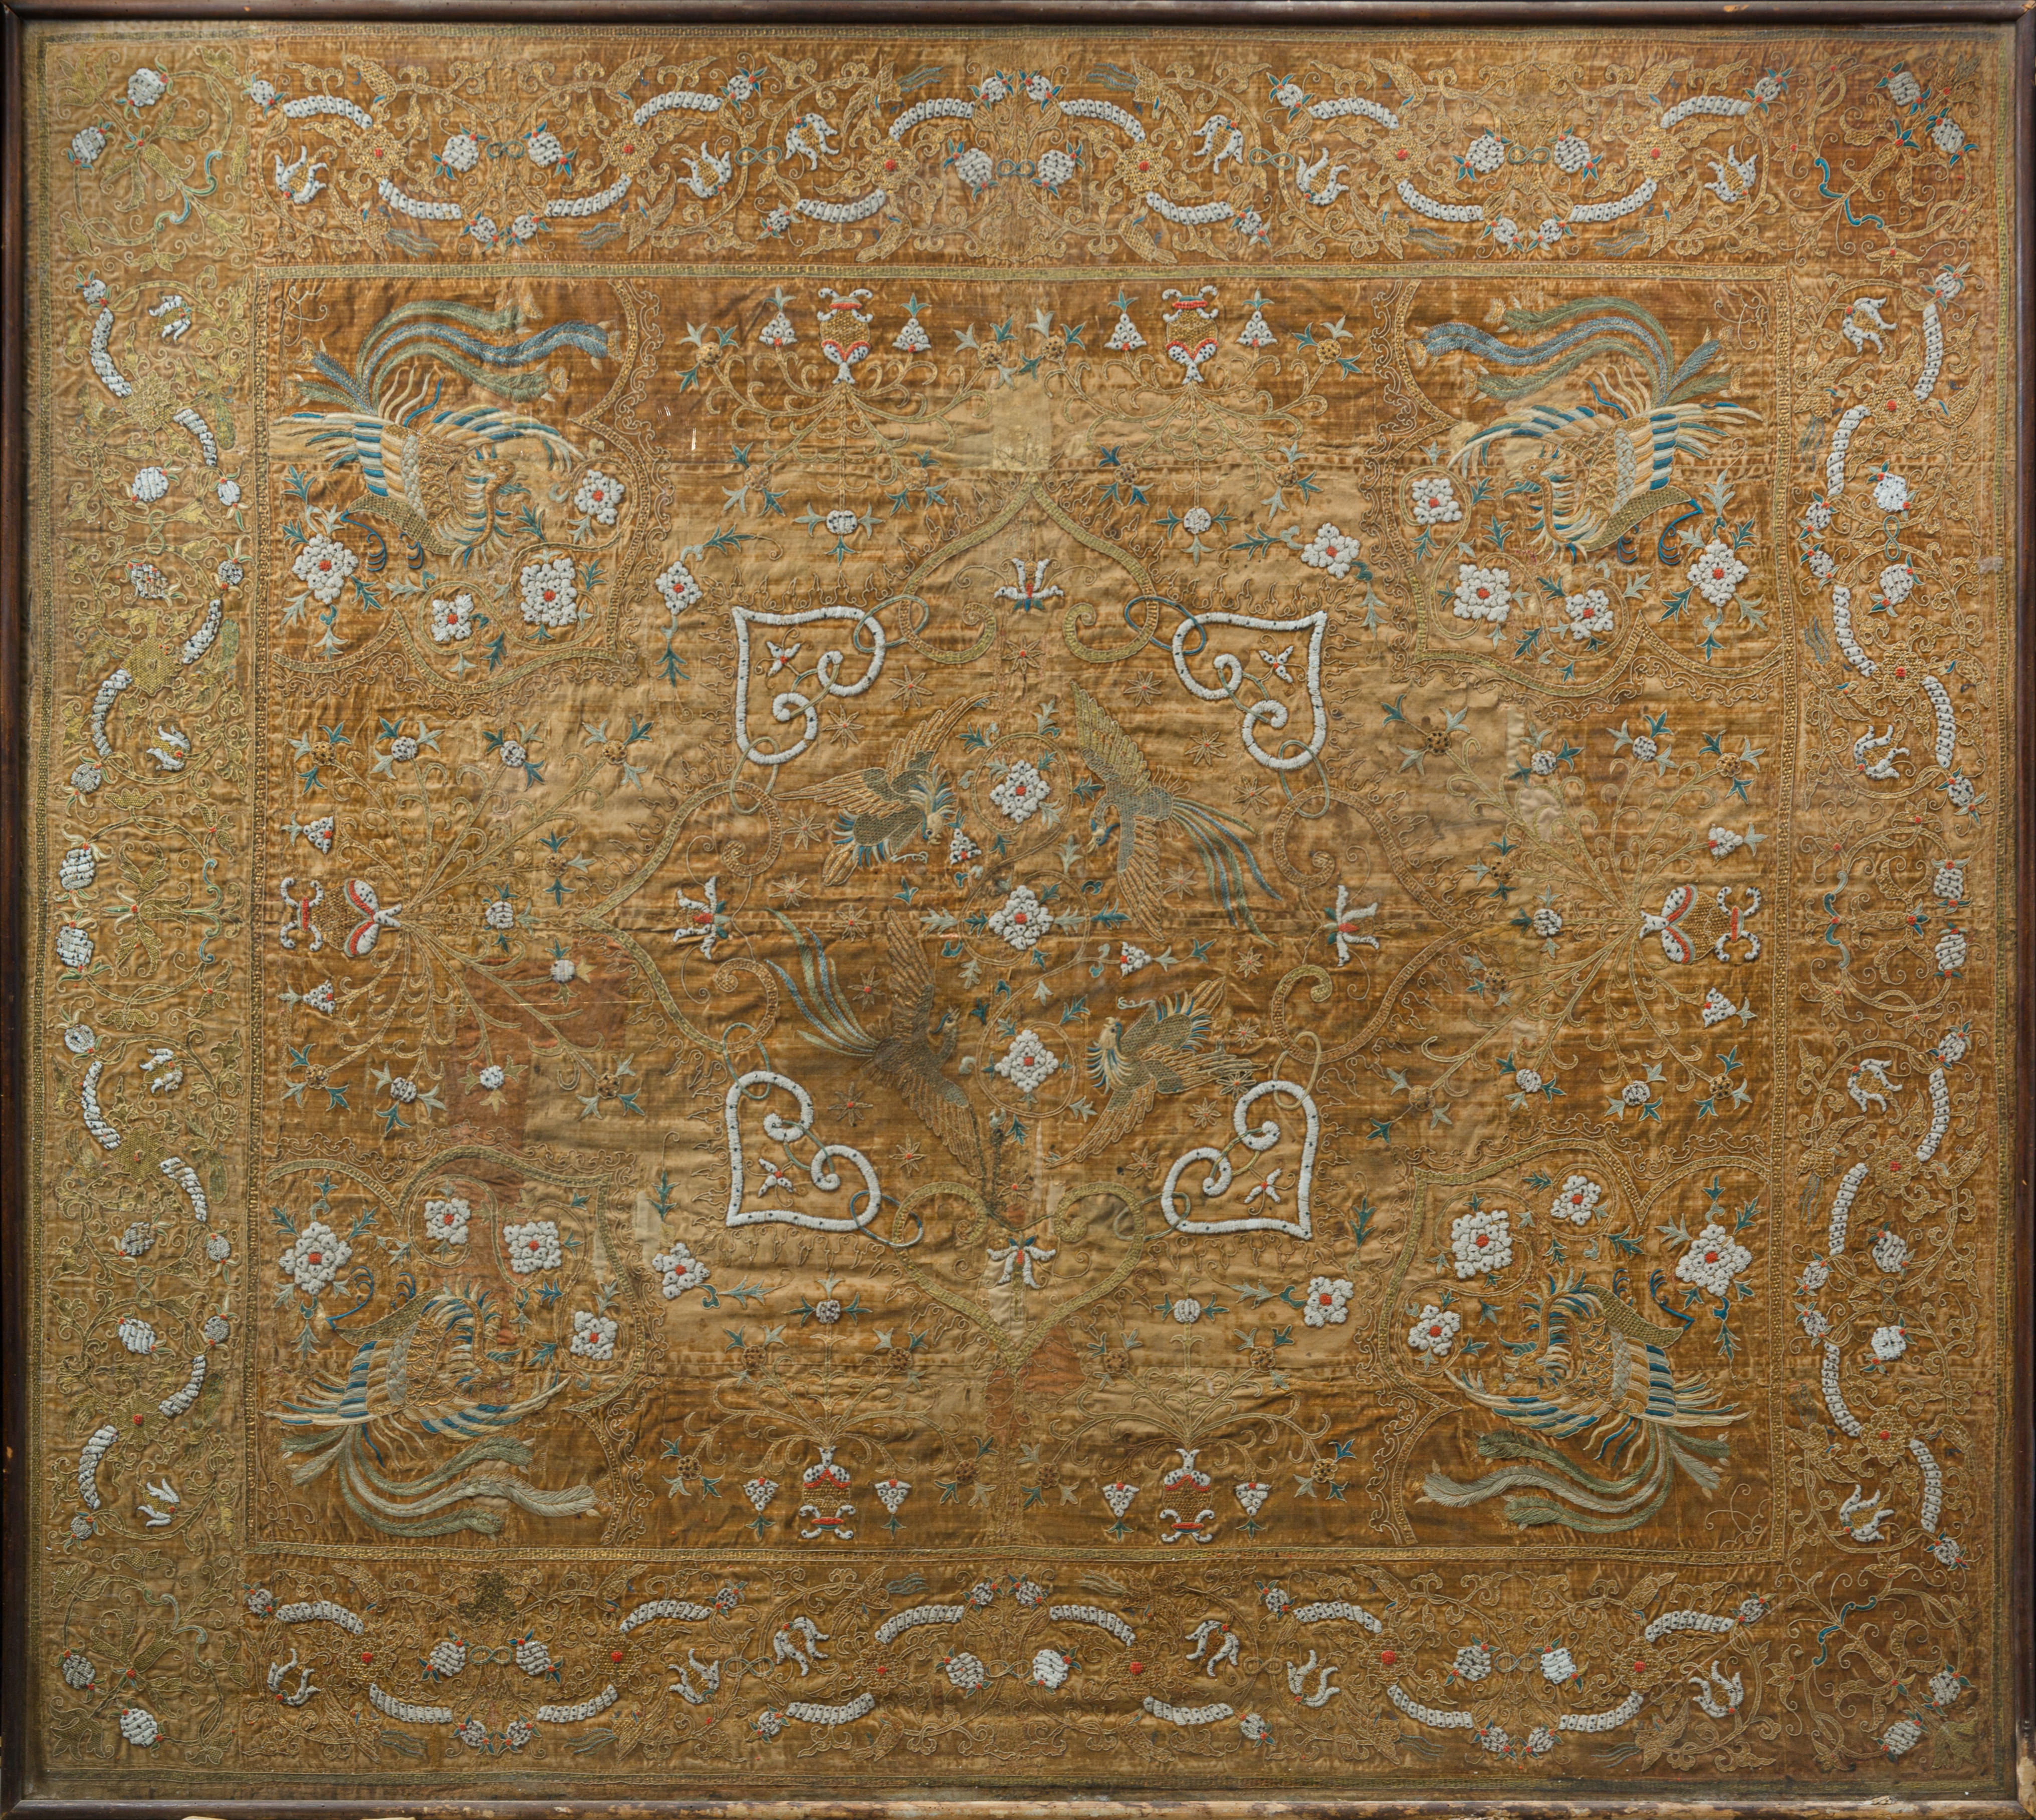 Grande arazzo - Large tapestry